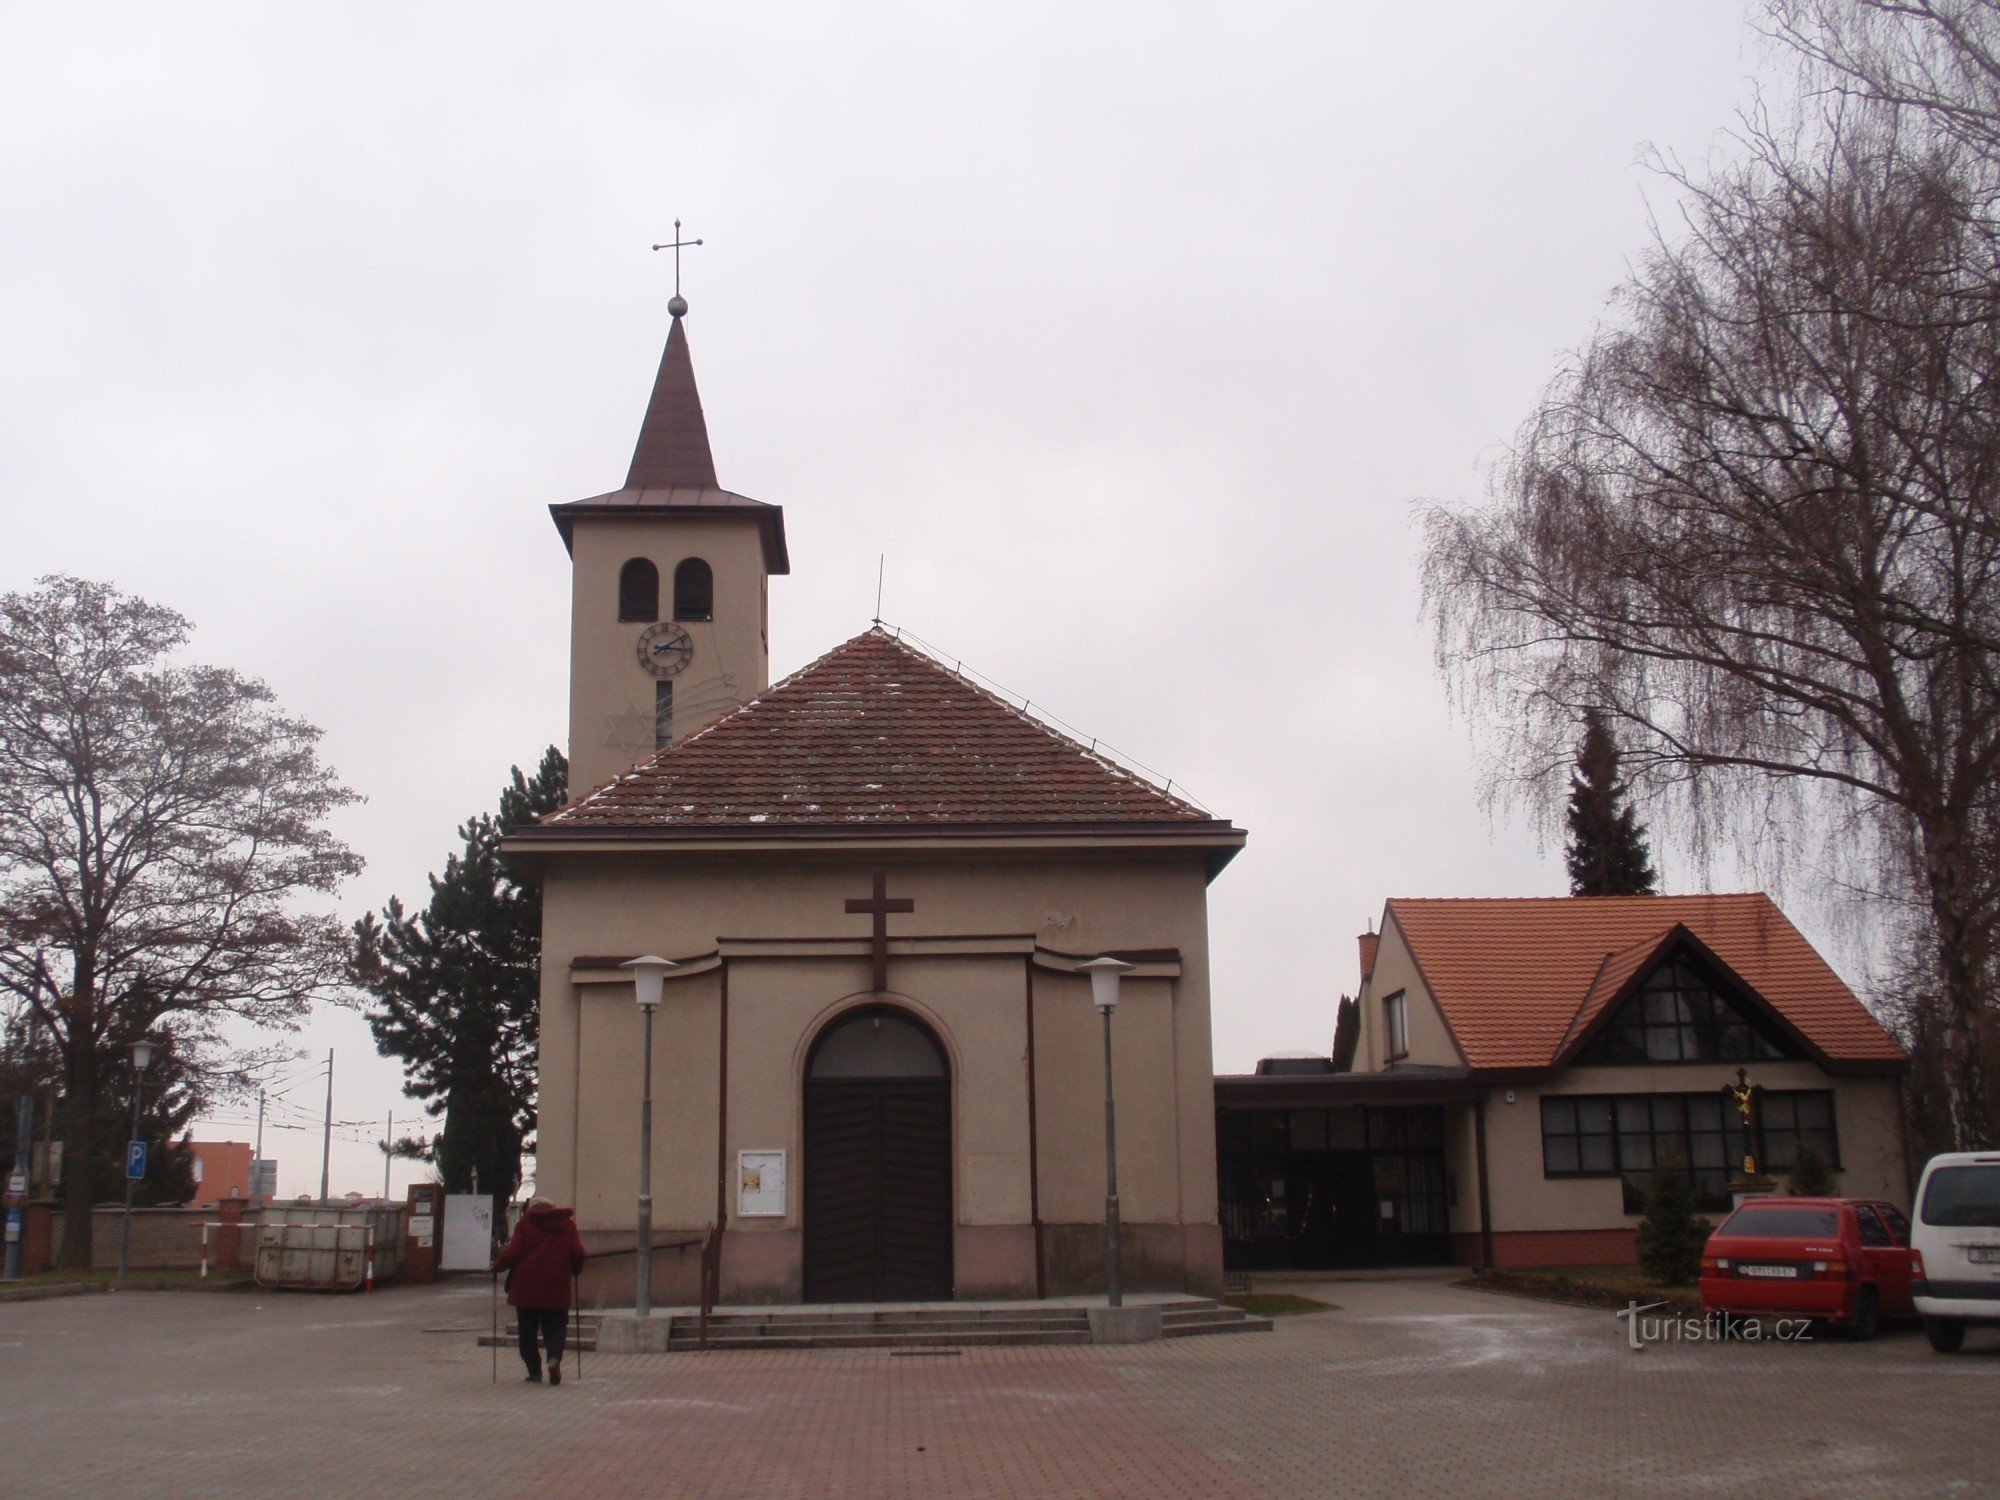 Nhà thờ Thăng thiên của St. Thập tự giá ở Brno-Slatina